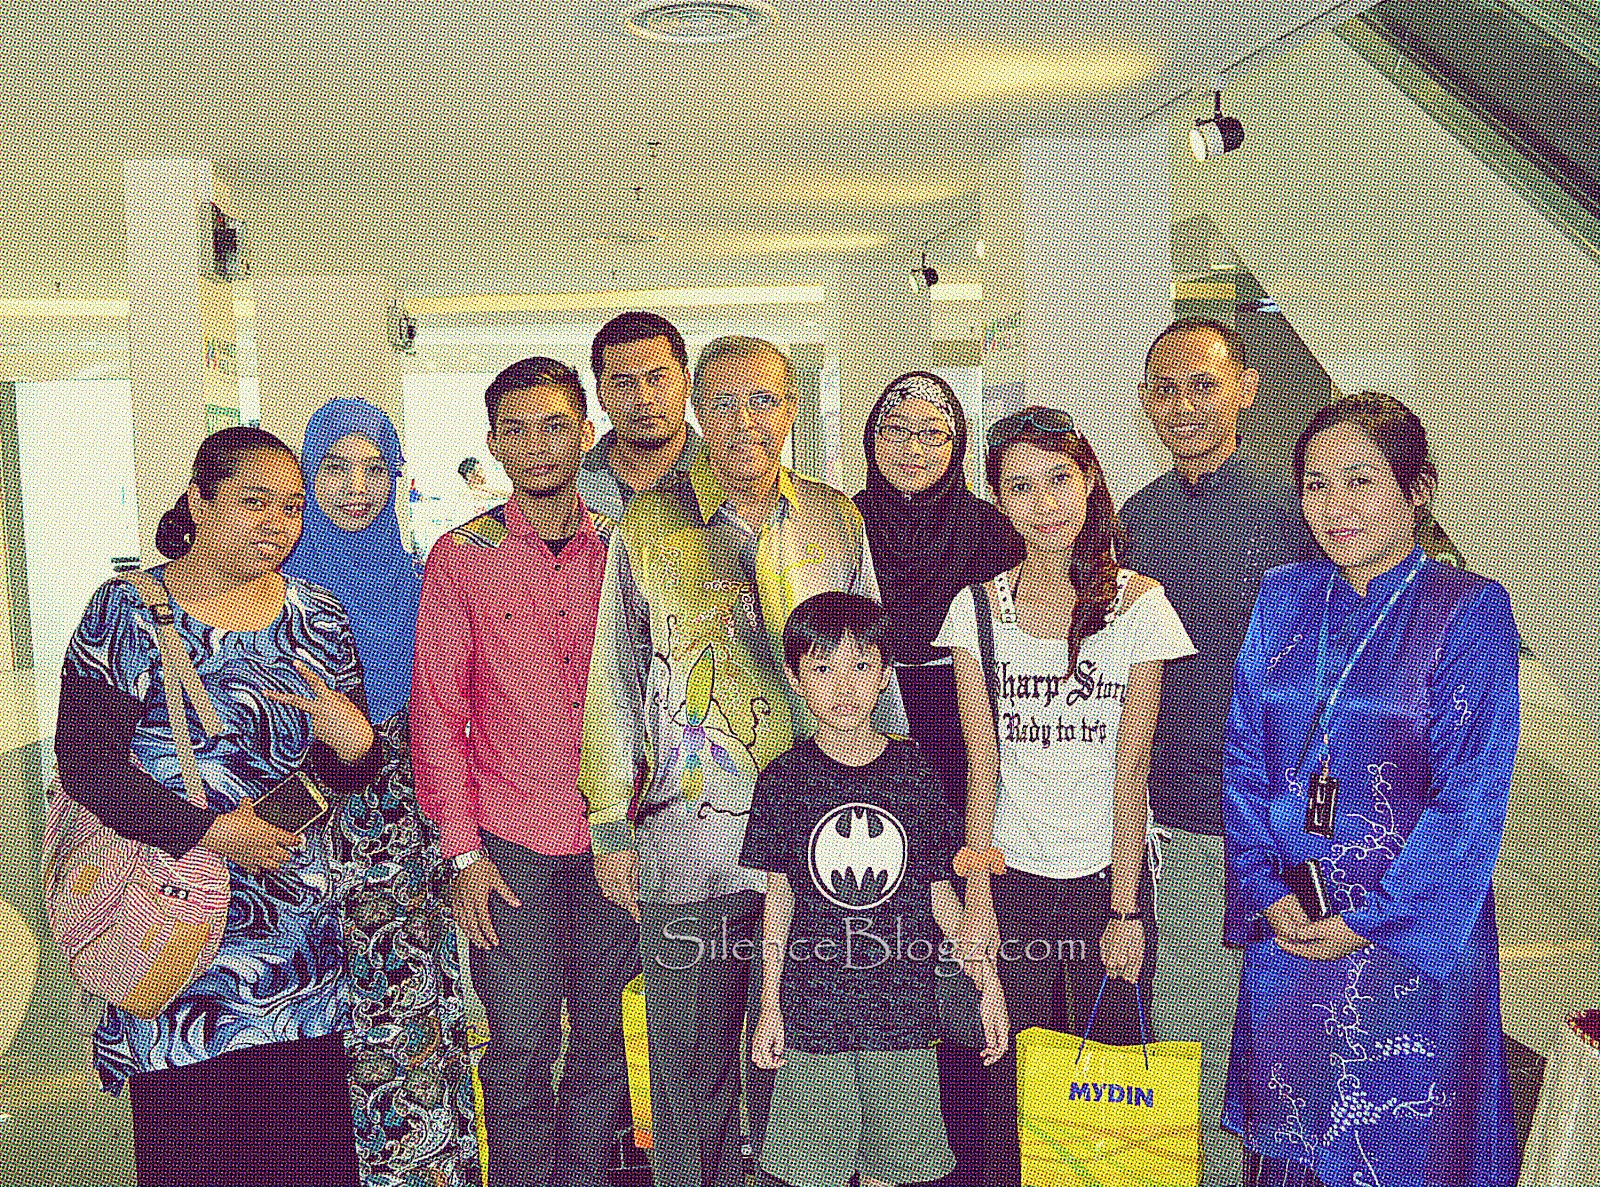 Barisan Blogger yang menyertai pembukaan Mydin Mart di Market hall